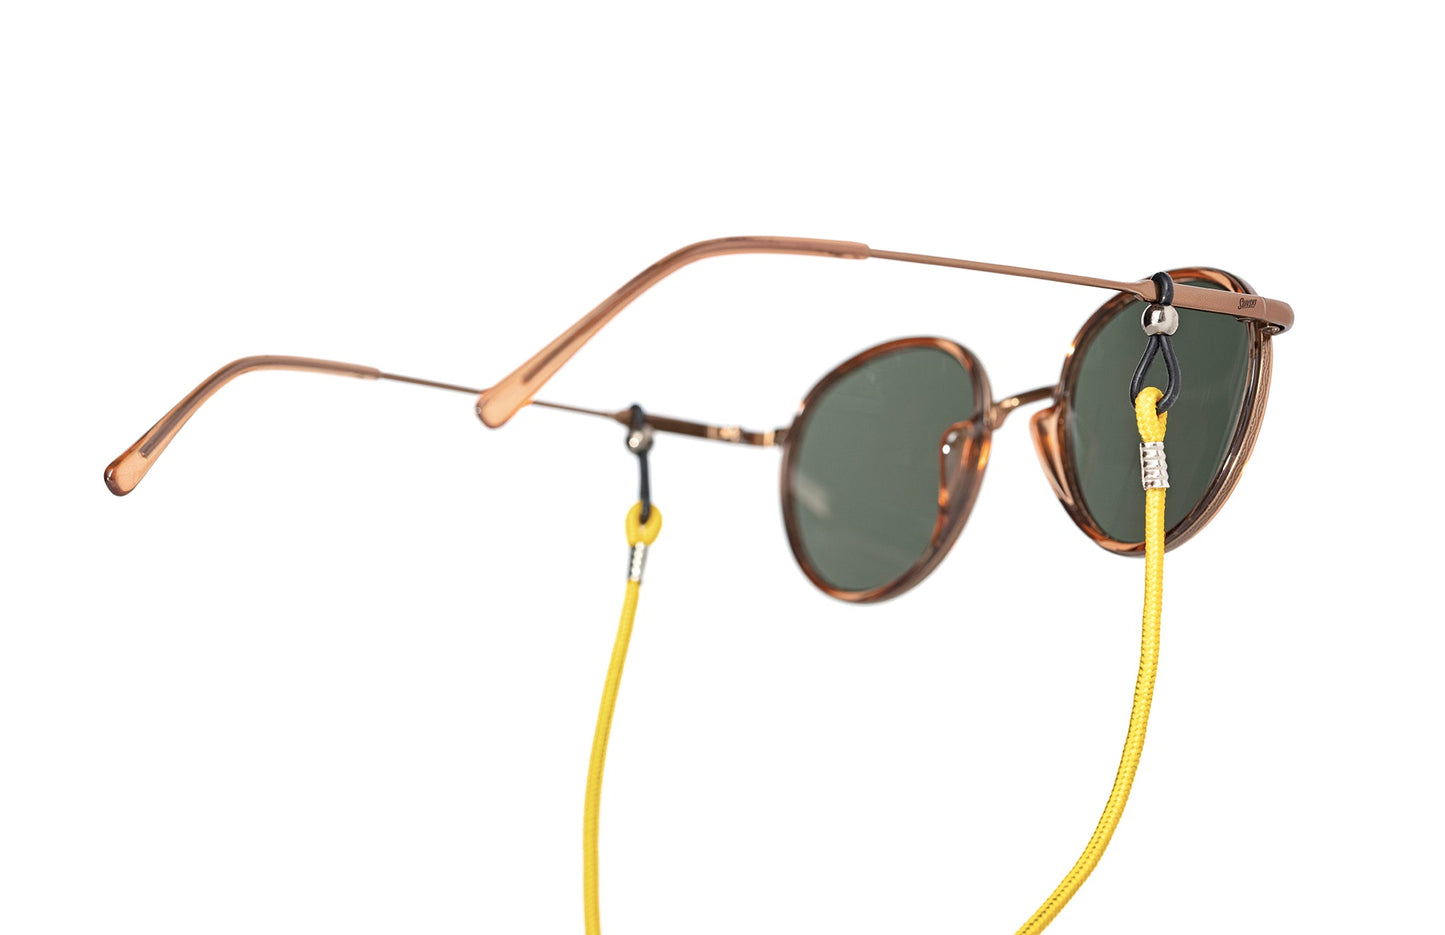 Sunglasses Ret. Device (S.R.D.)